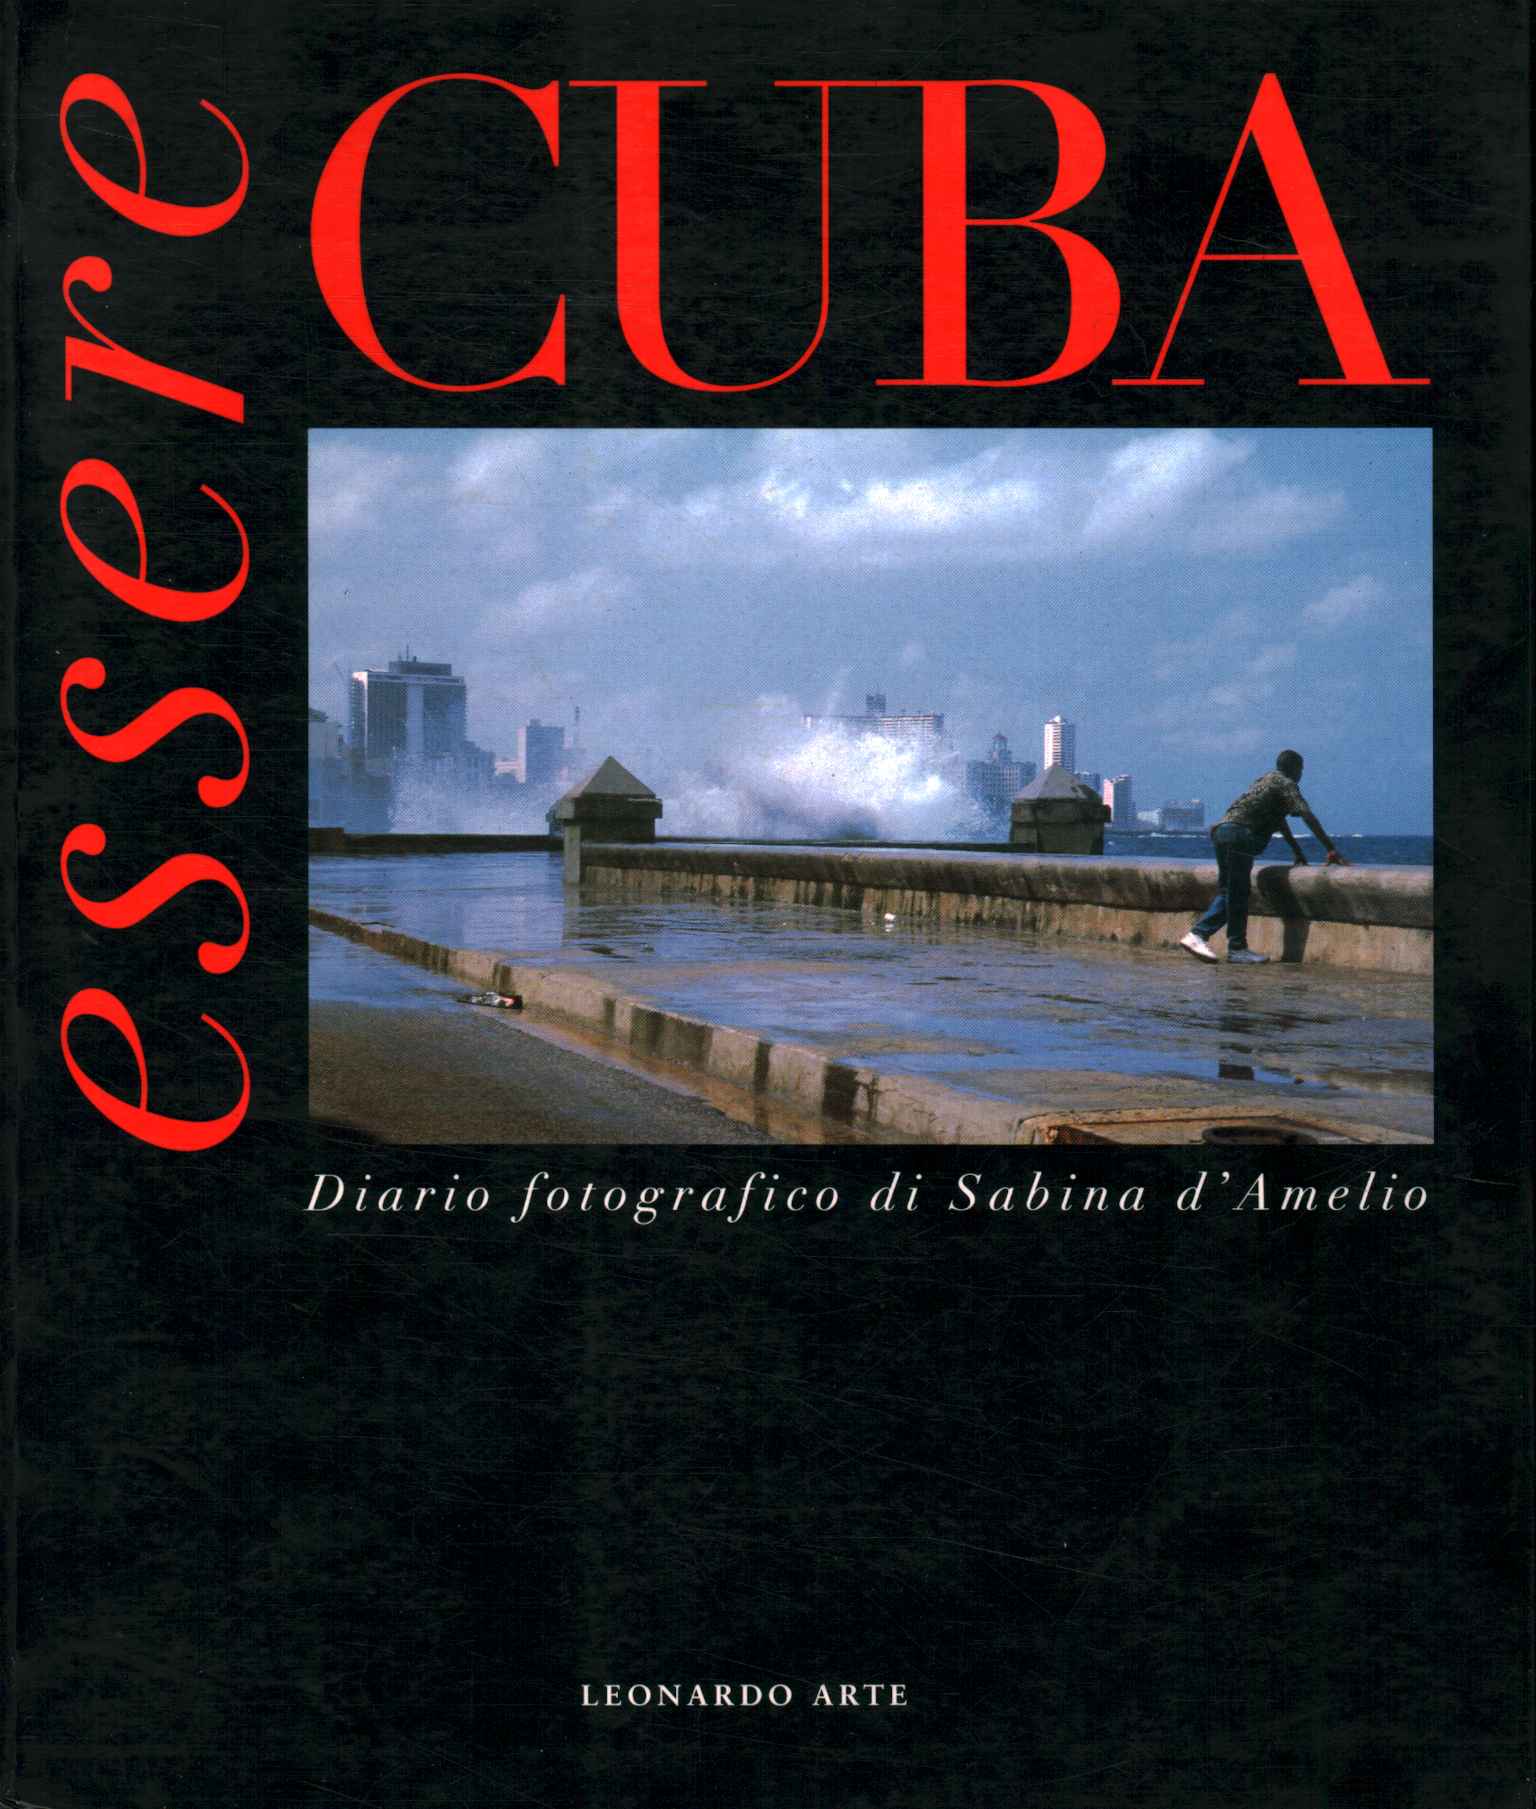 Kuba sein